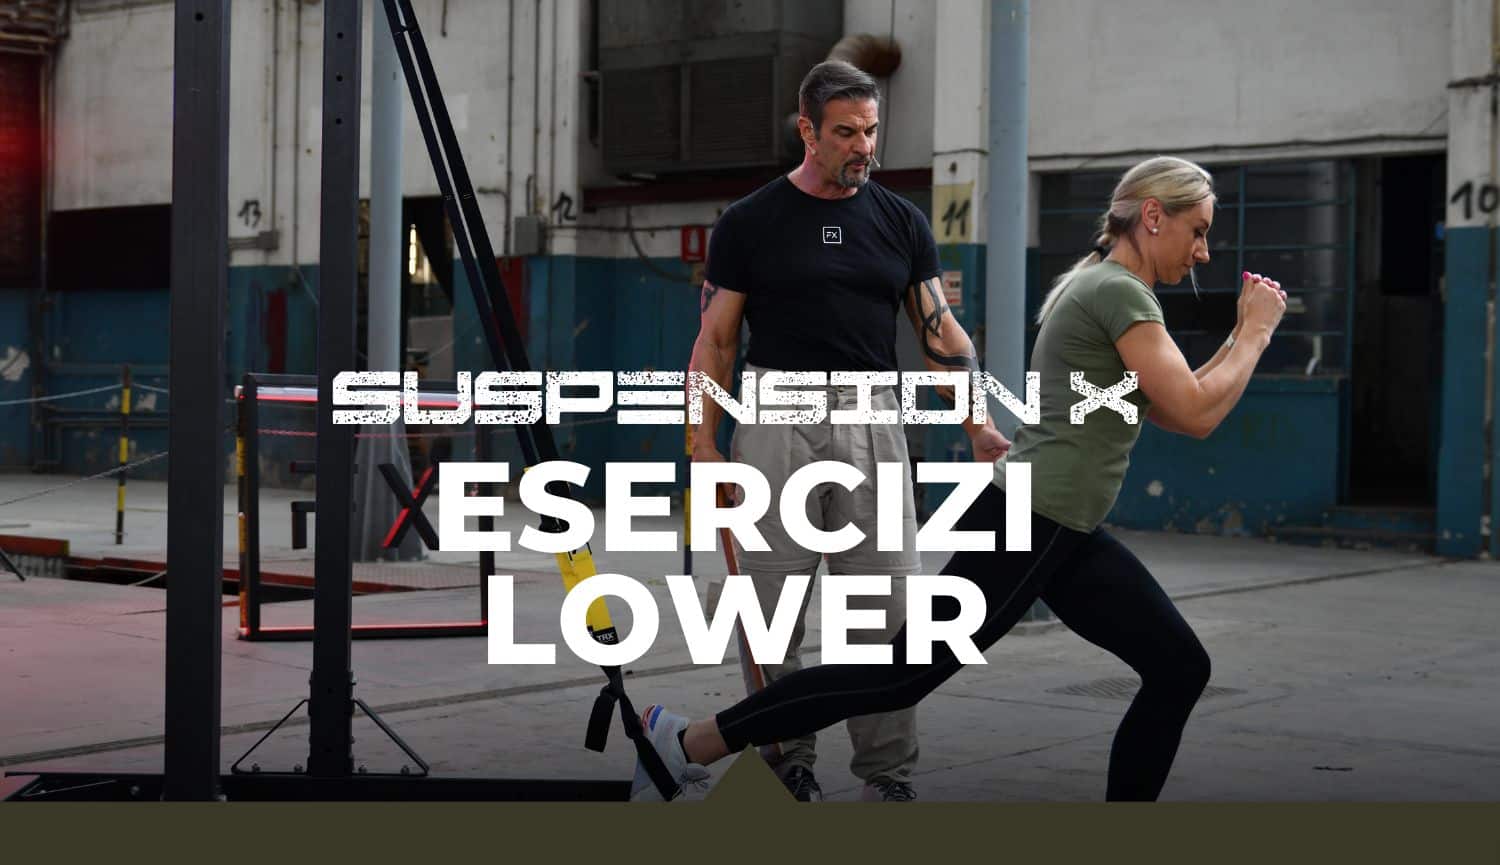 Esercizi per il Lower Body al Suspension Training by Luigi Colbax